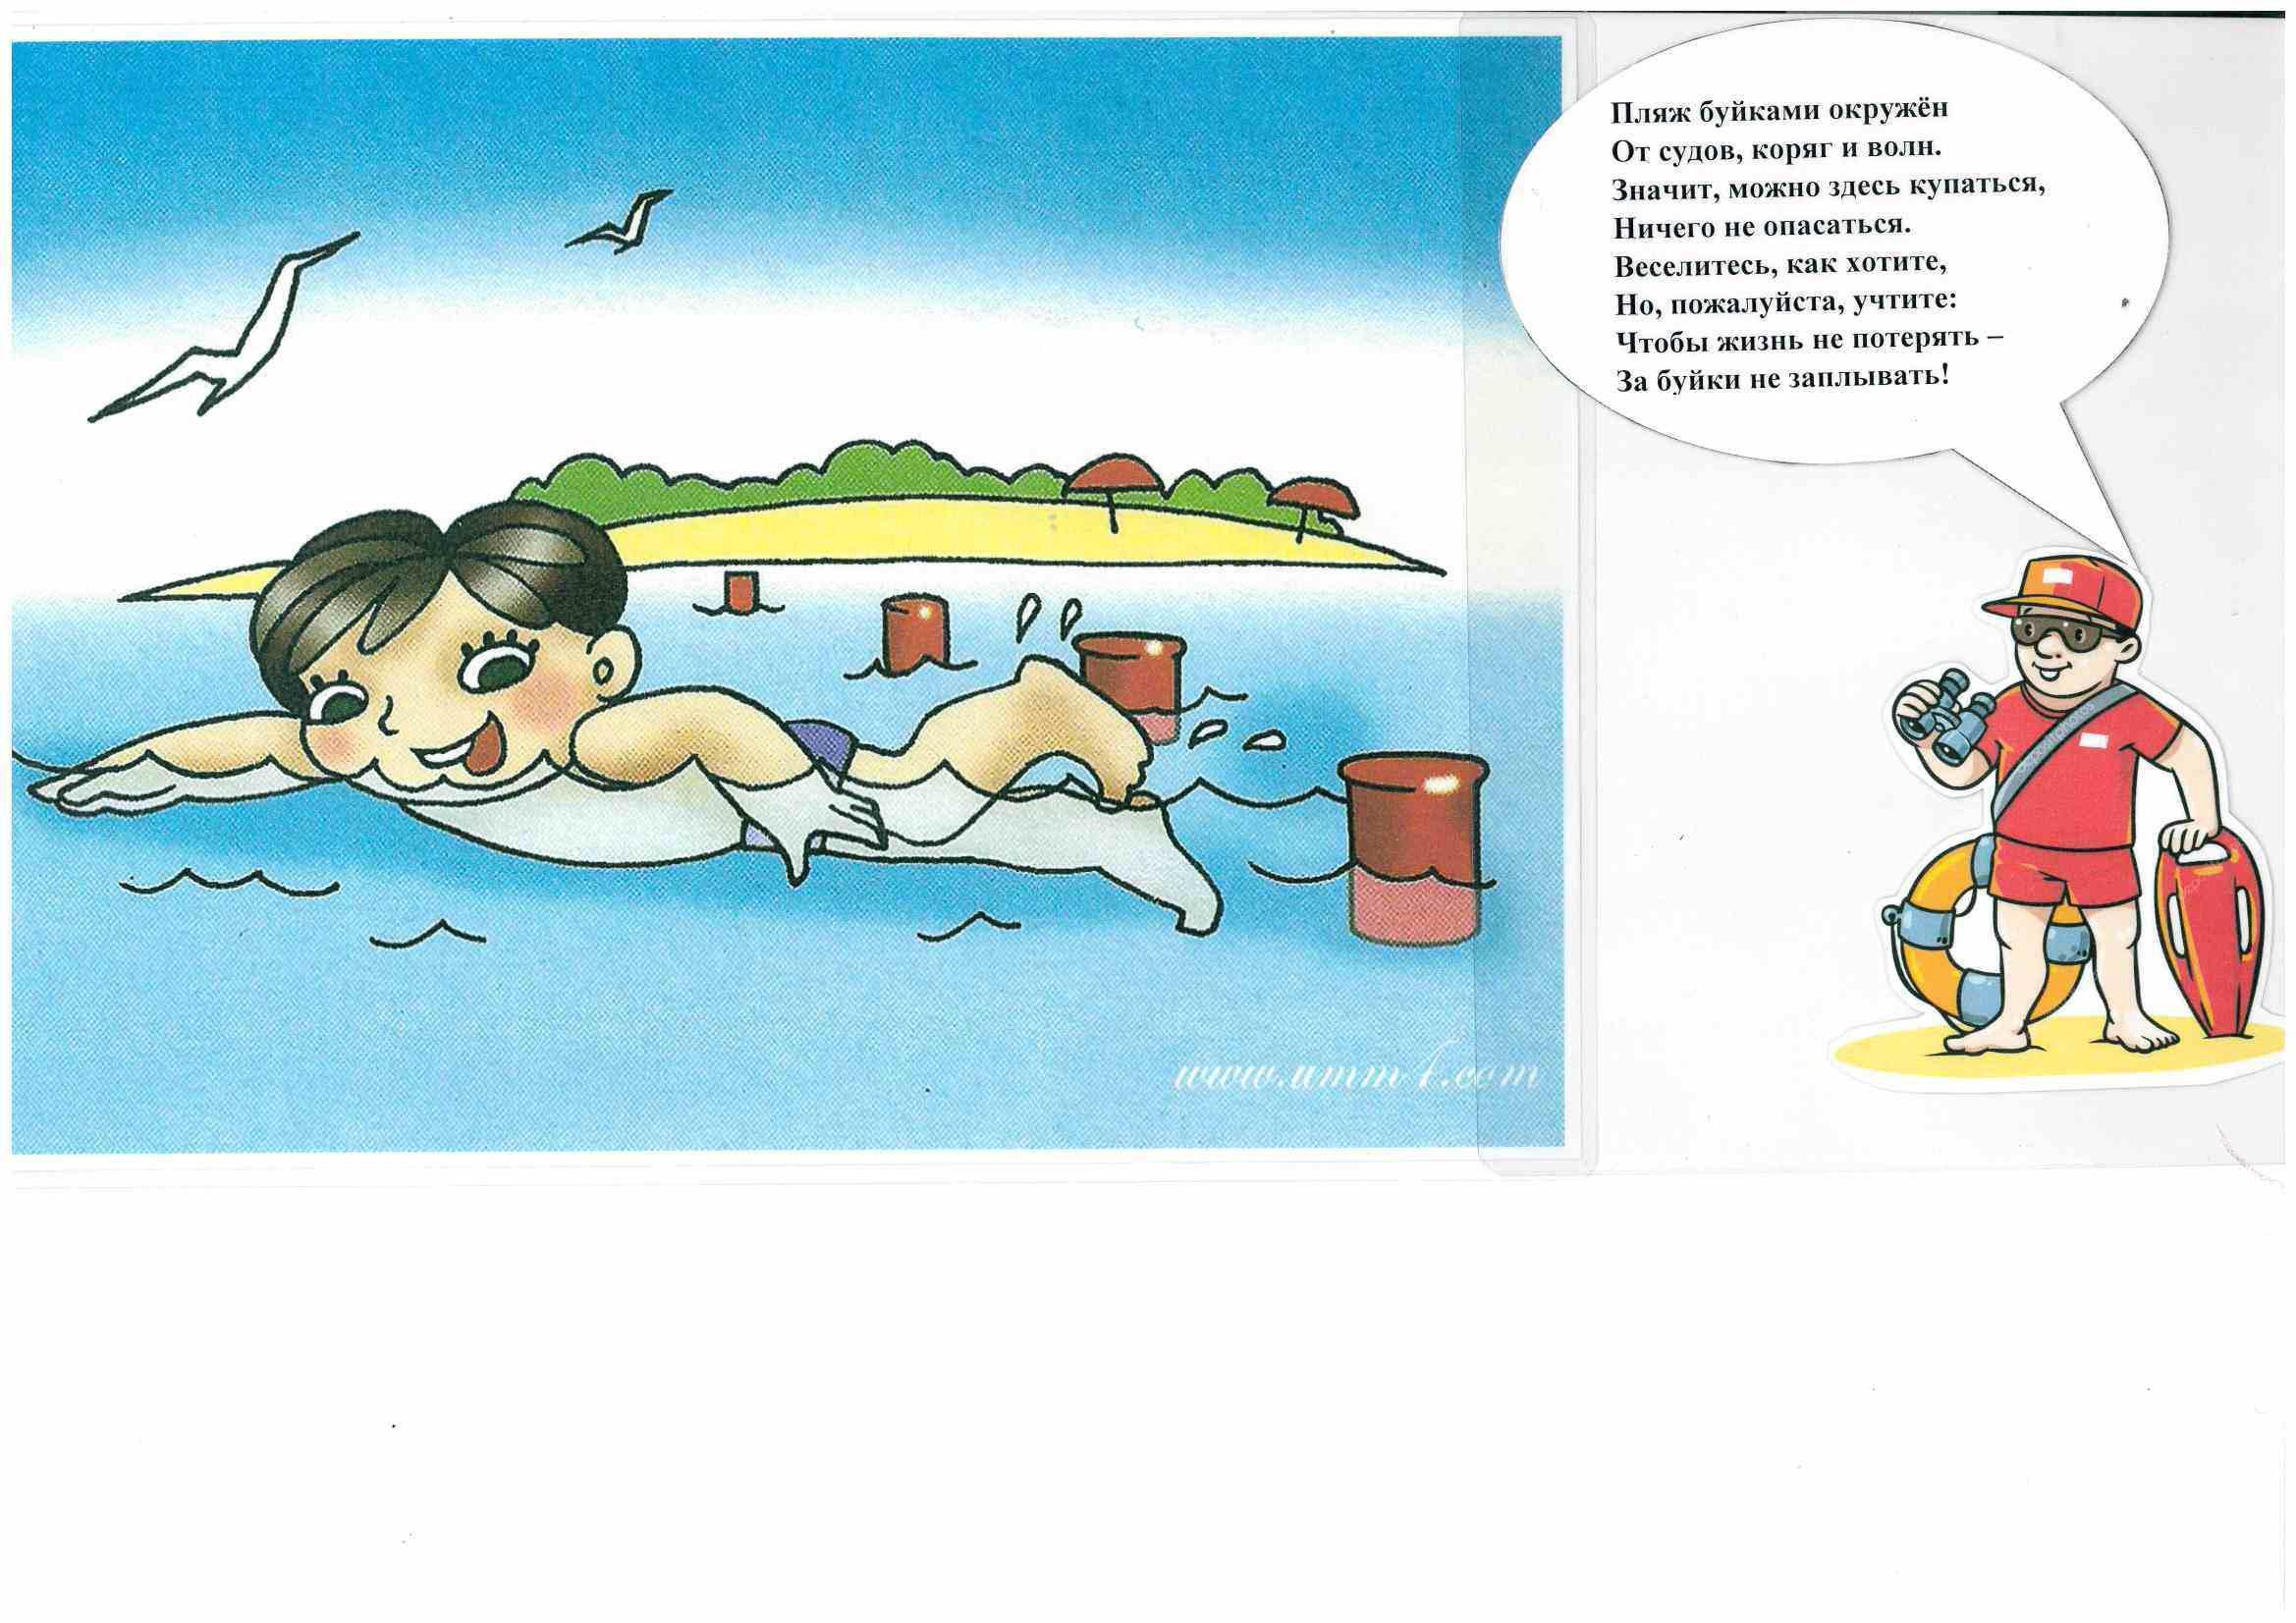 Рисунки безопасность детей на воде в летний период